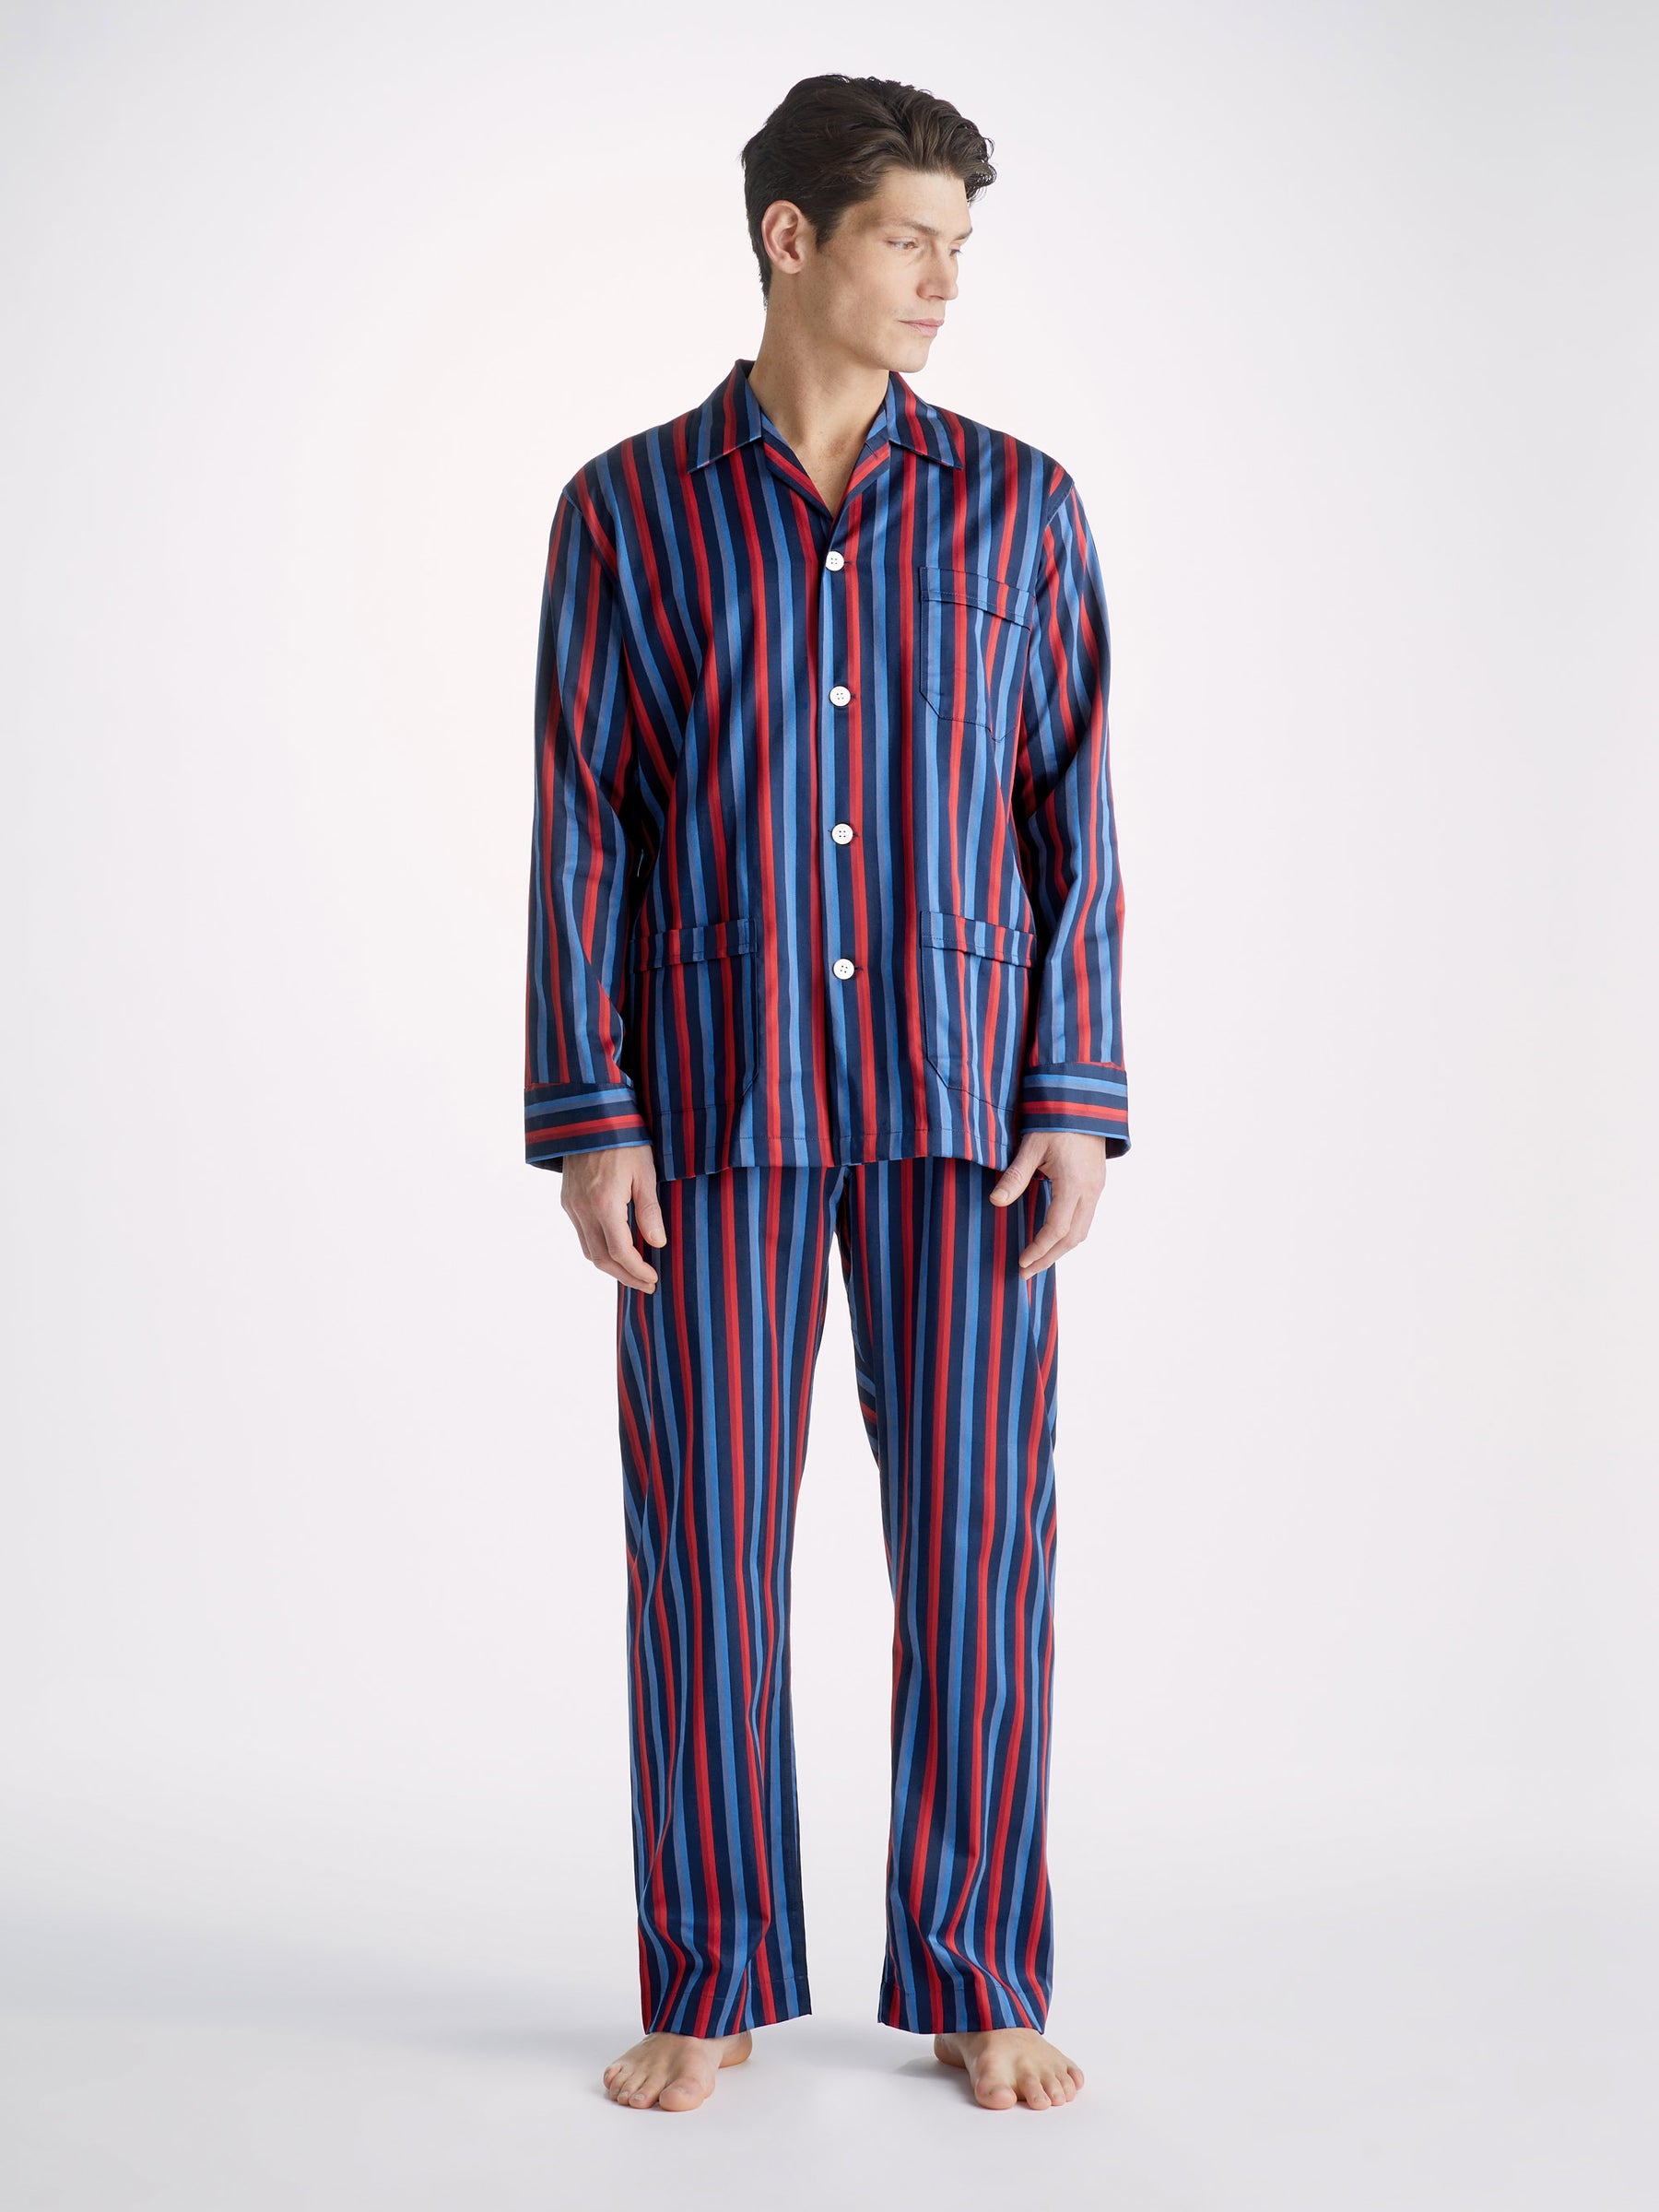 Men's Classic Fit Pyjamas Wellington 55 Cotton Navy